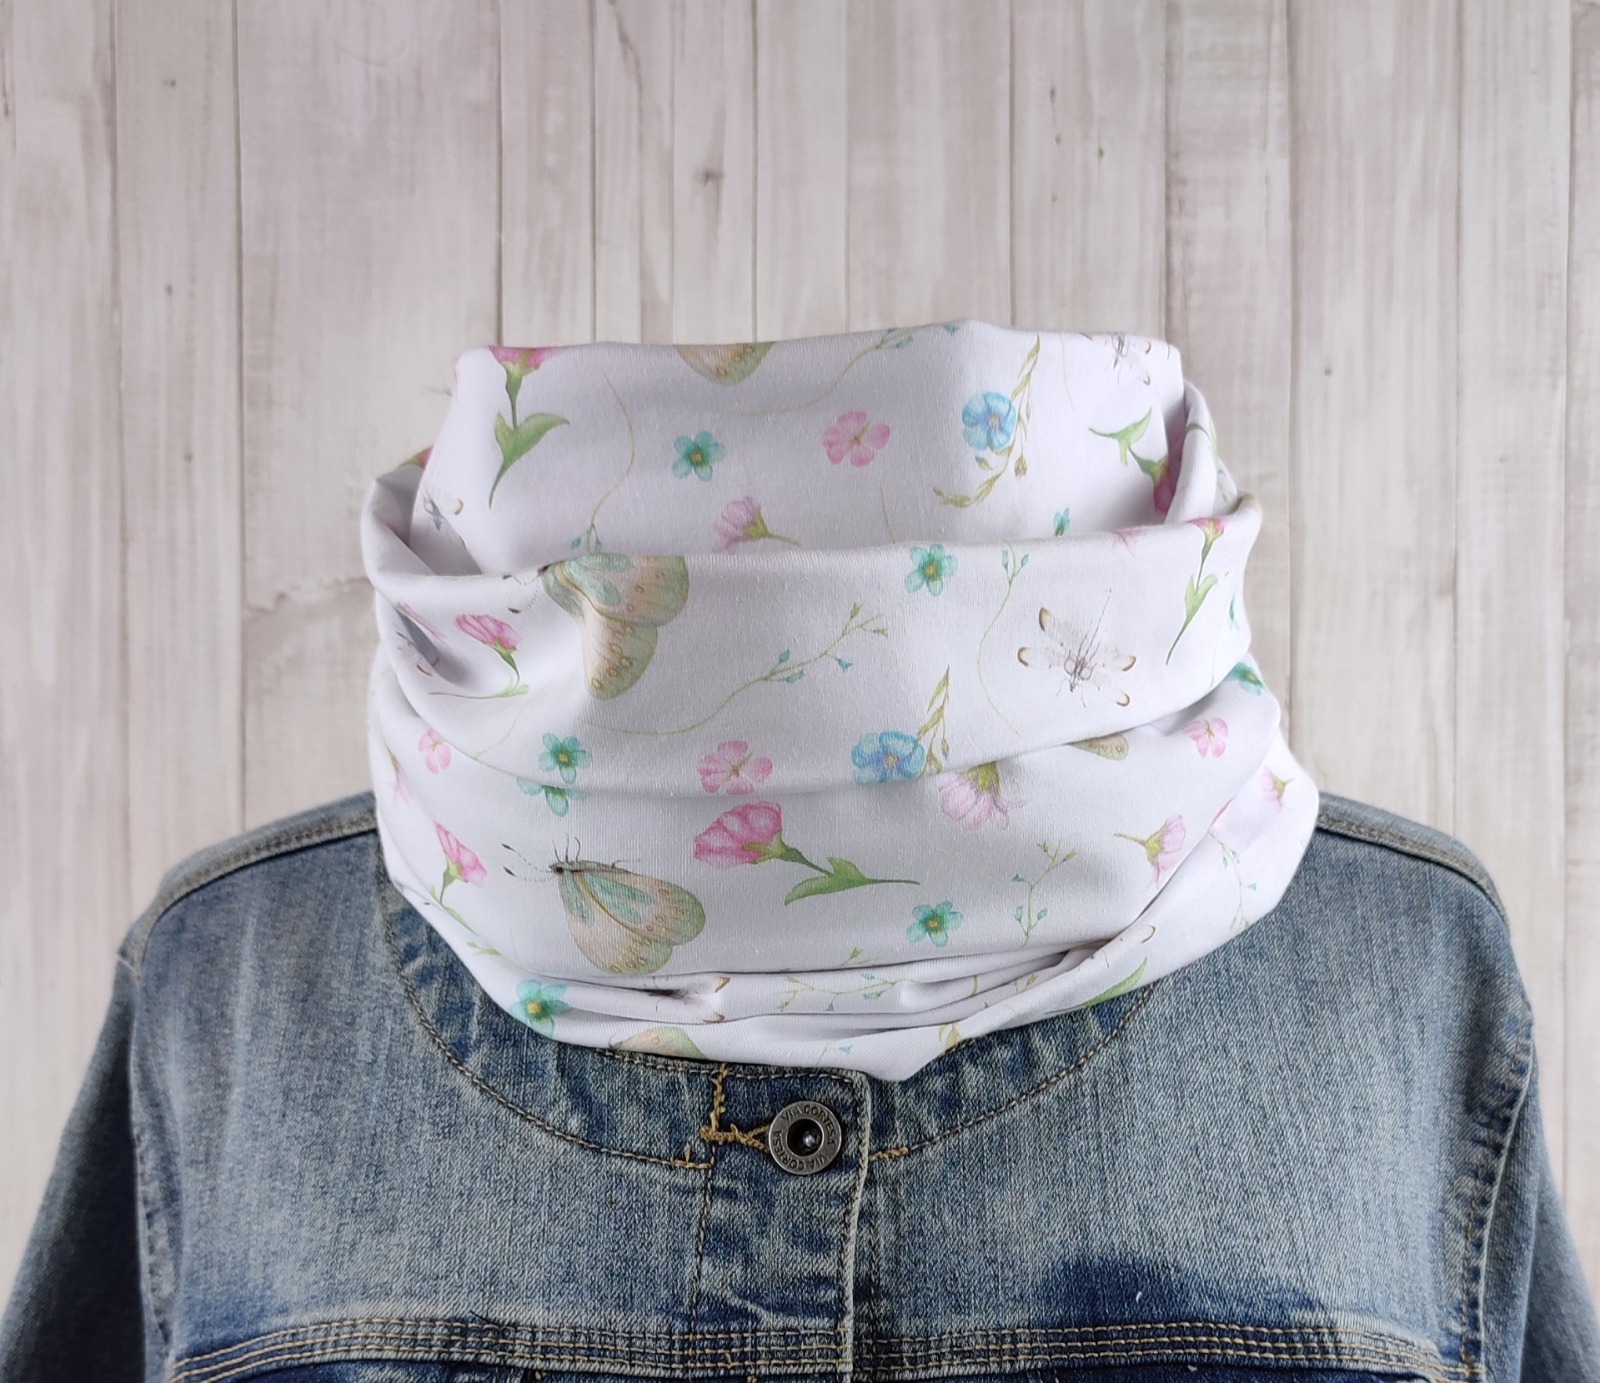 Loop Schlauchschal in weiß mit ganz zarten Blumen und Schmetterlingen in rosa und hellblau - Schal für Damen aus Jersey 2